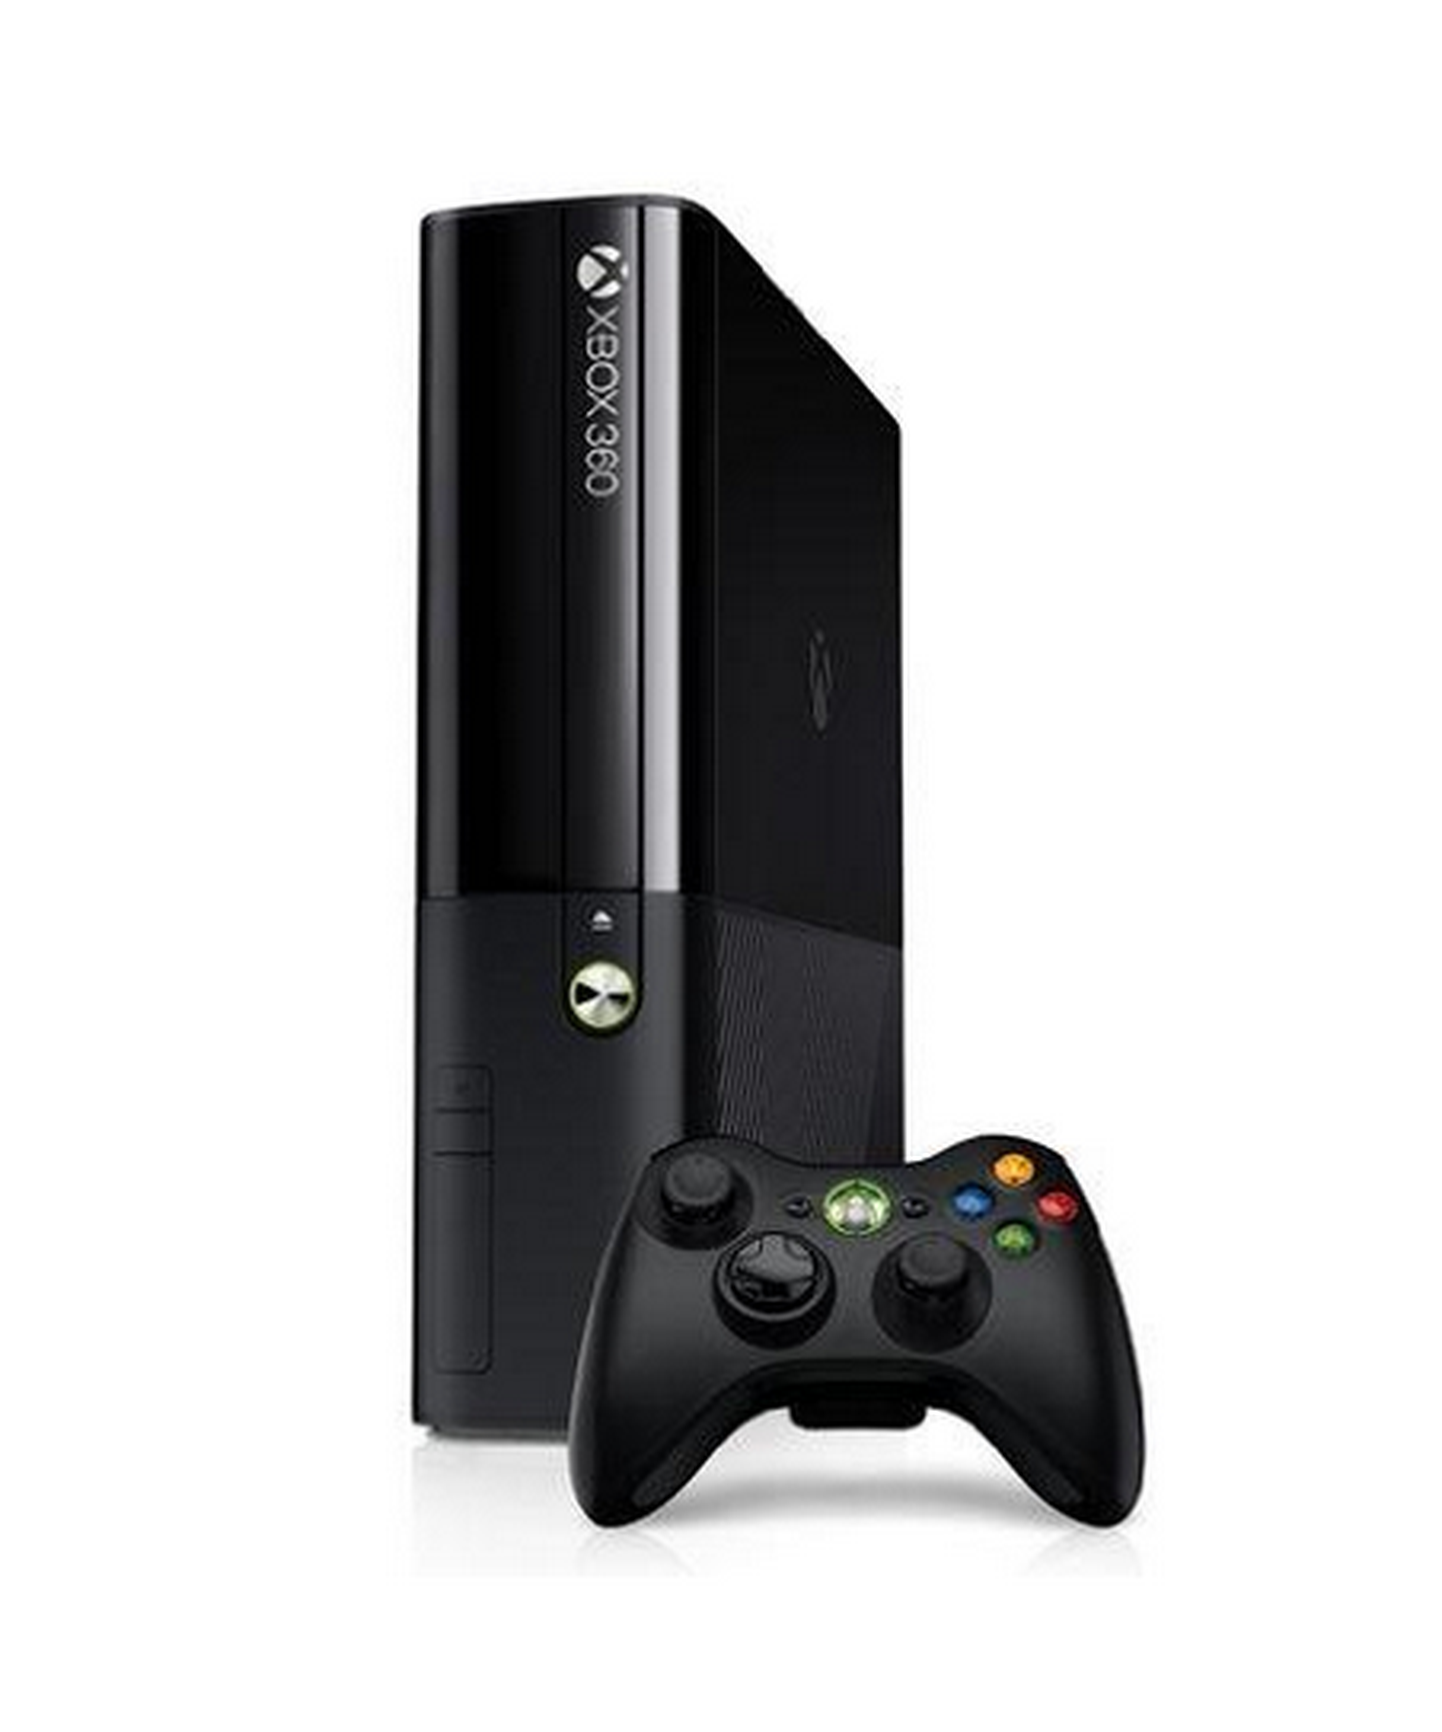 Xbox 360.